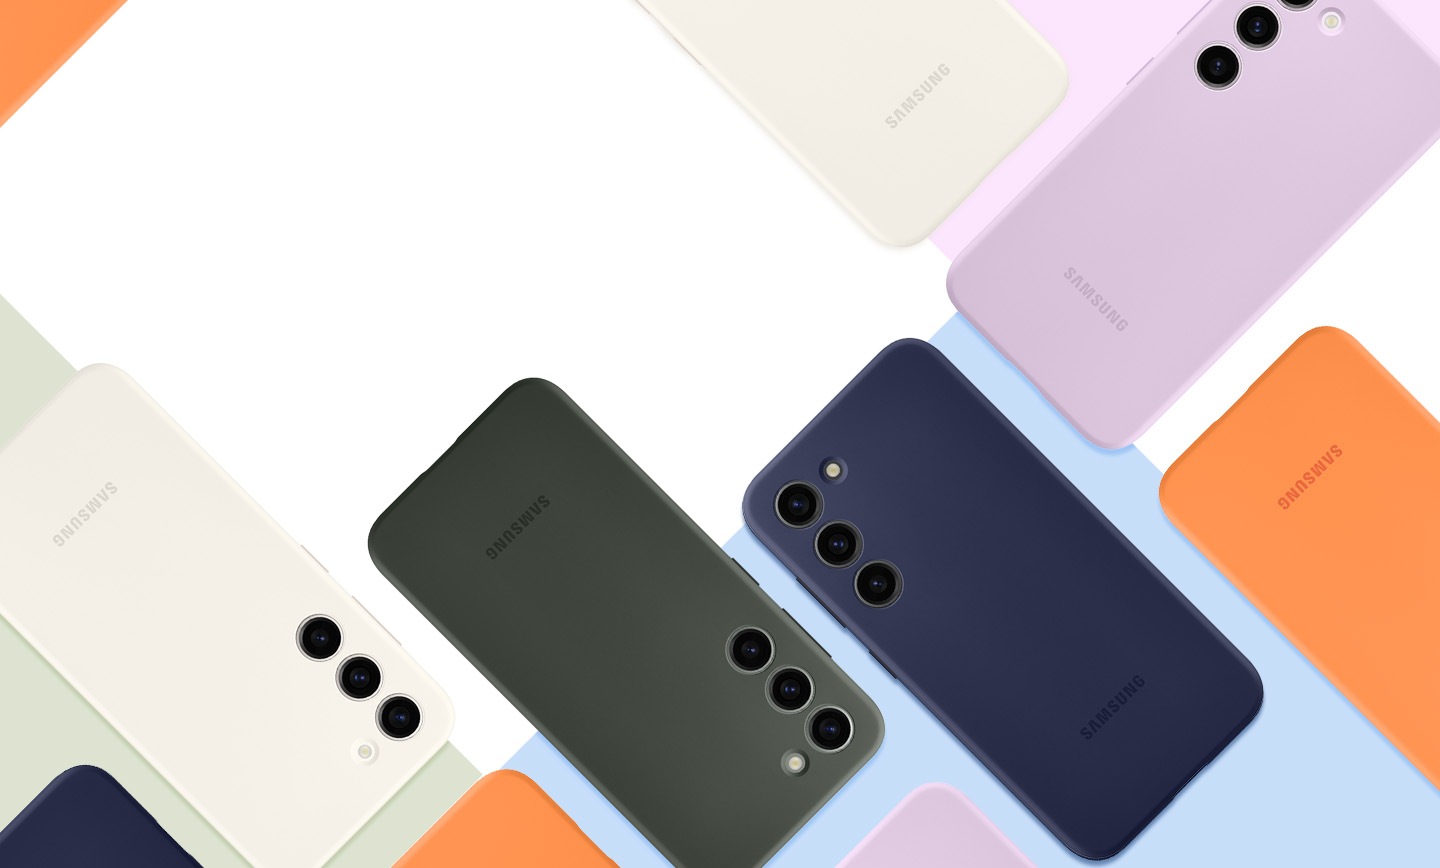 Vue à plat des téléphones Galaxy S23 équipés de coques en silicone colorées et posés face vers le bas.